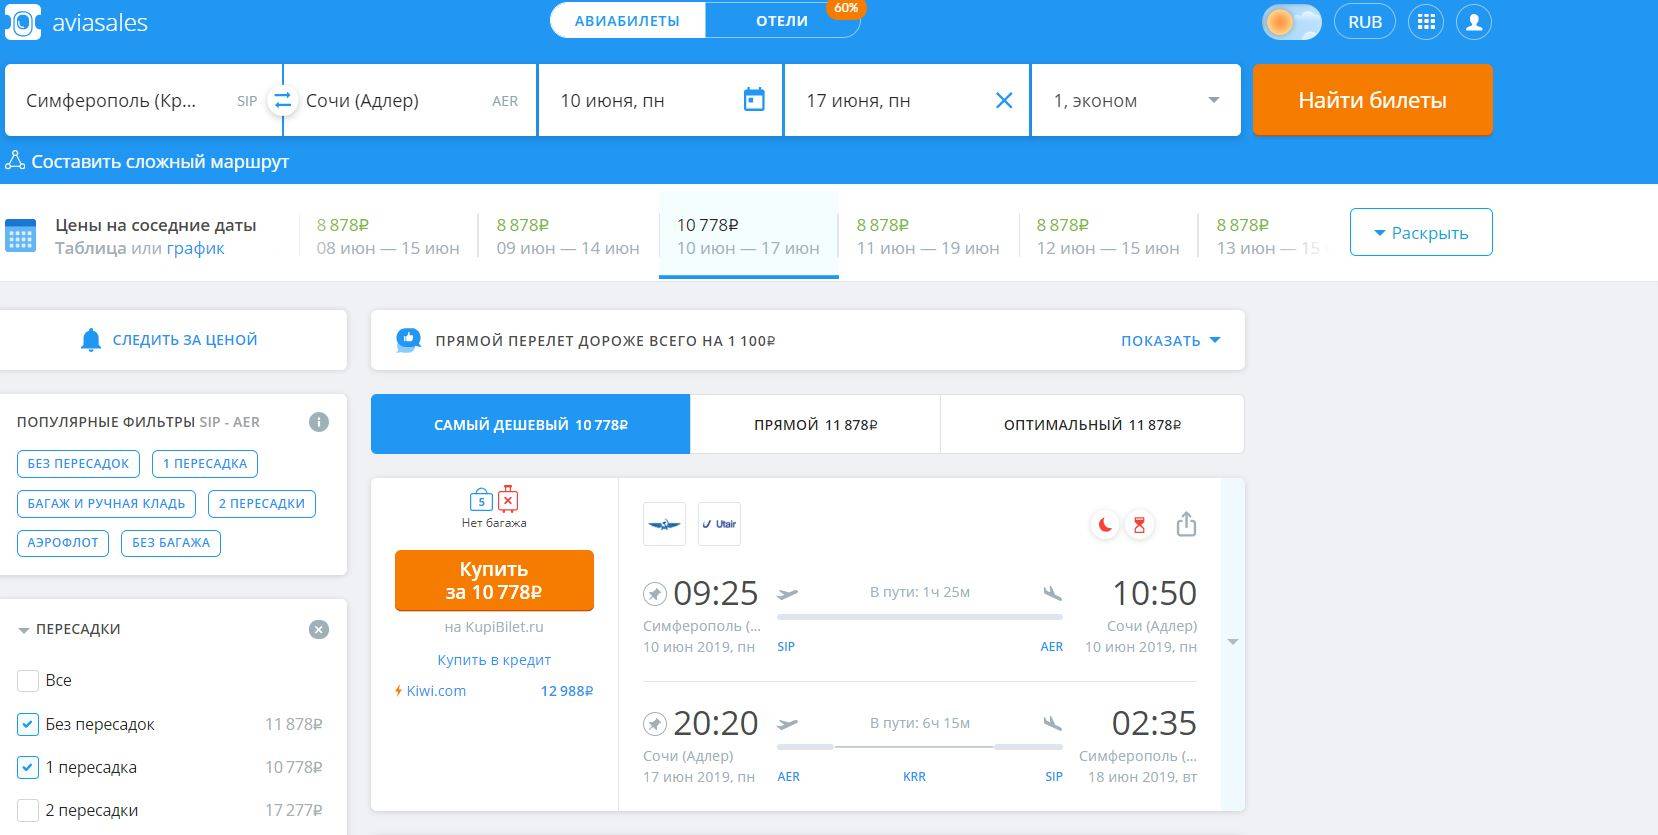 дешевые авиабилеты онлайн купить на москву